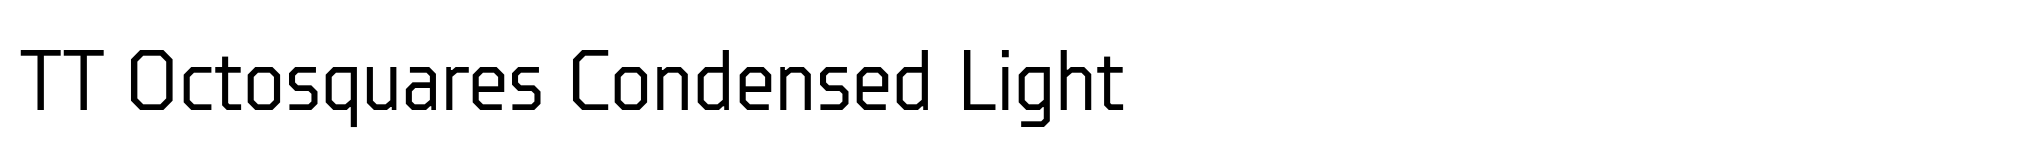 TT Octosquares Condensed Light image